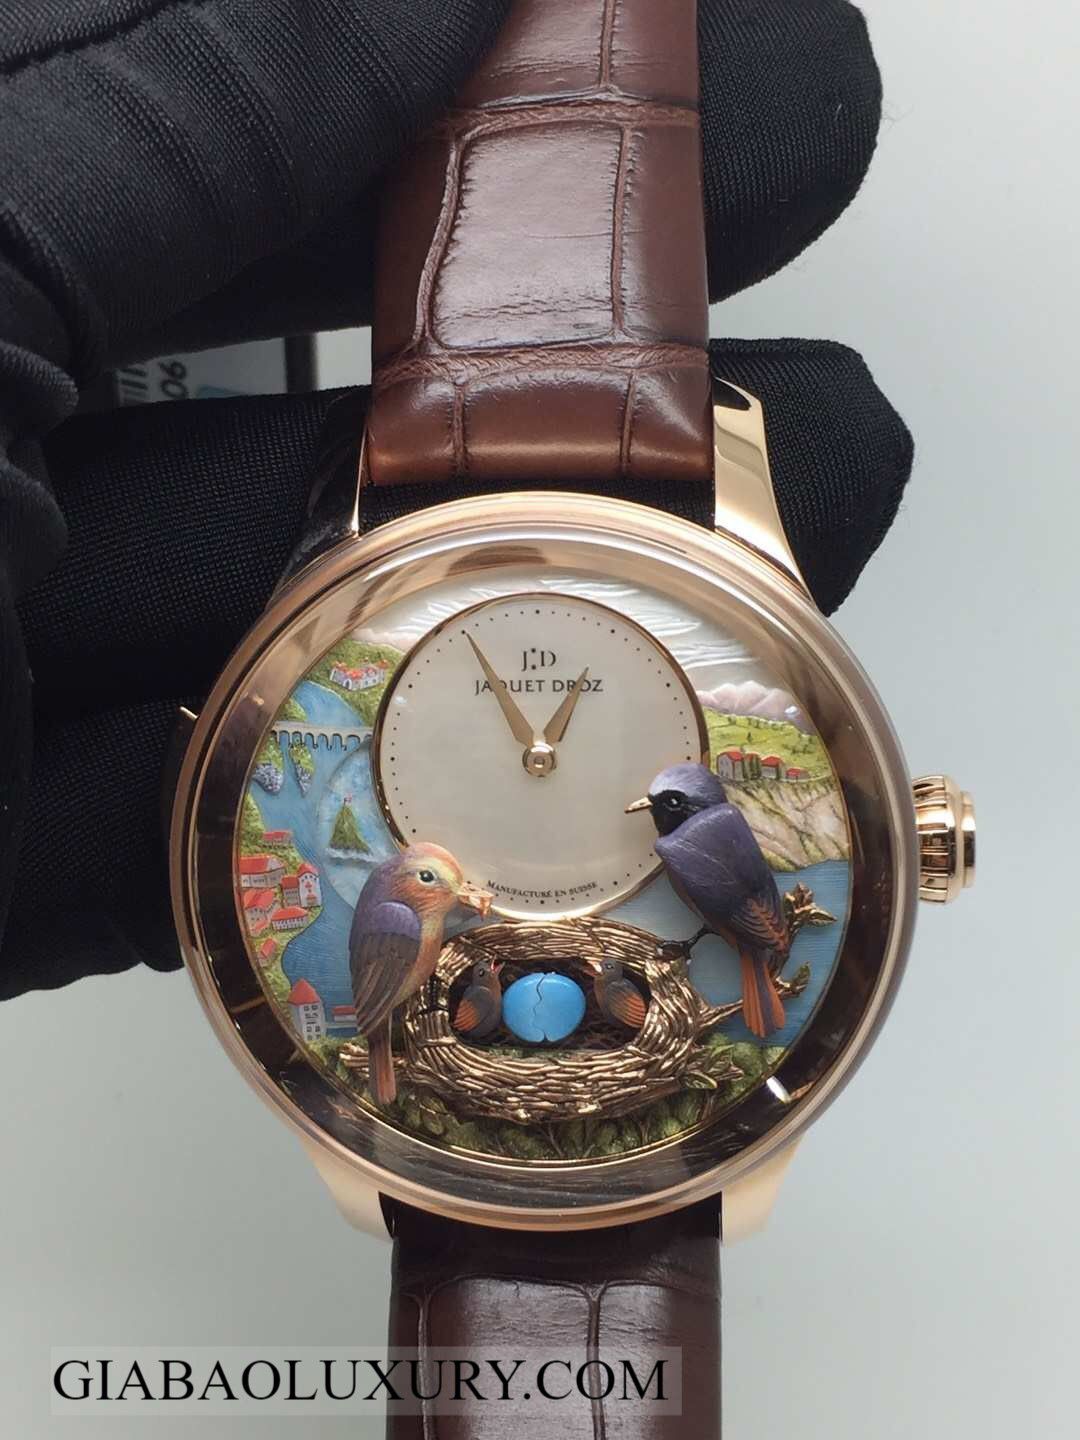 Thu mua đồng hồ Jaquet Droz chính hãng tại Gia Bảo Luxury